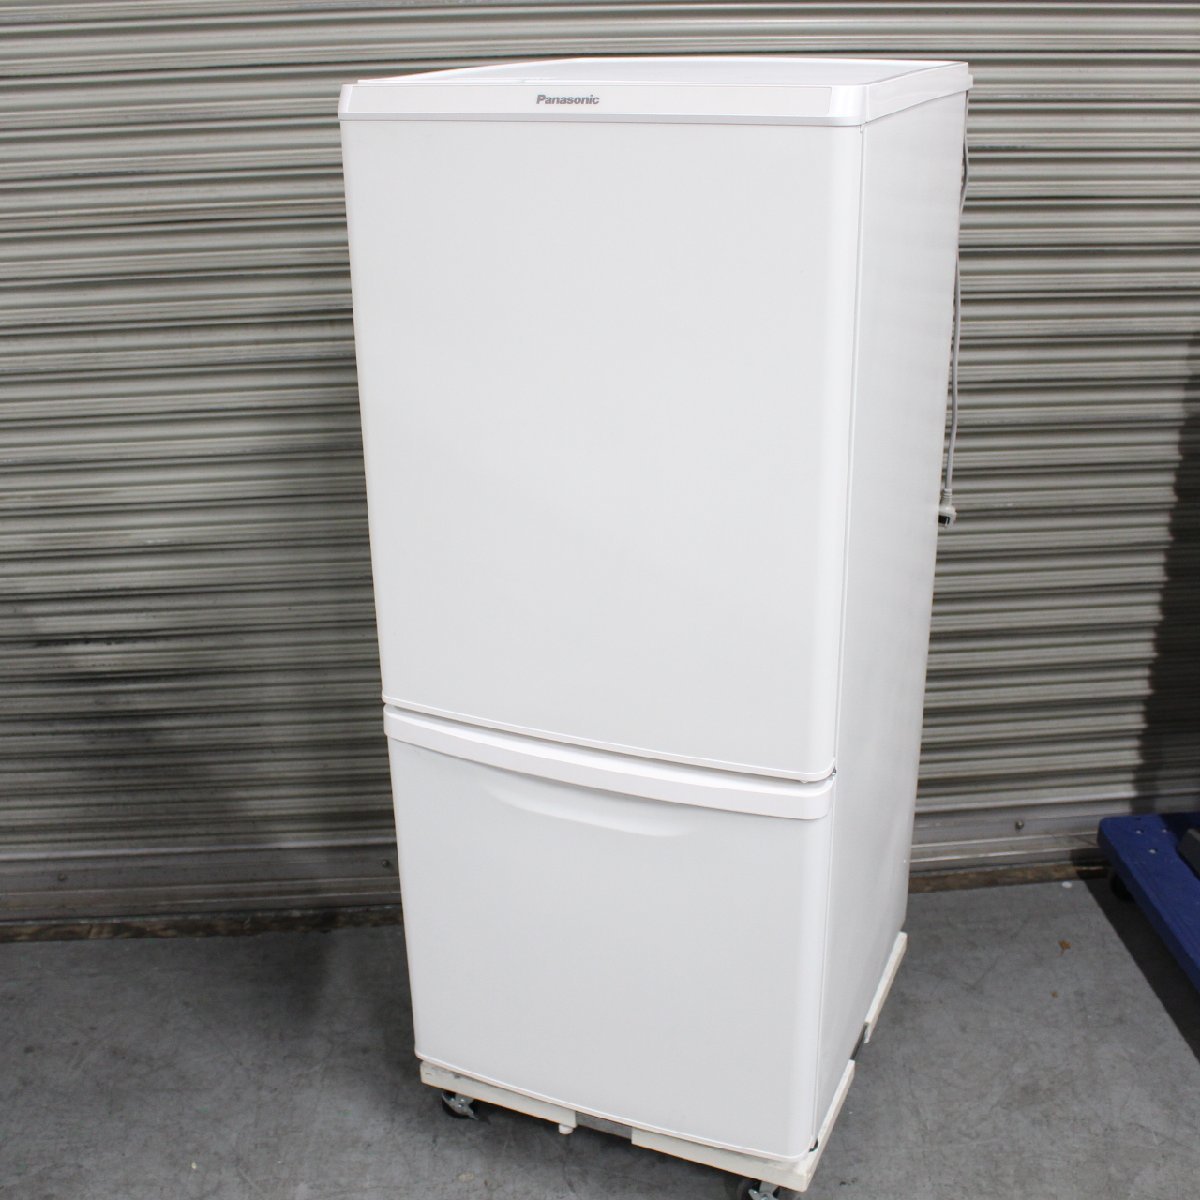 横浜市泉区にて Panasonic 冷蔵庫 NR-B14CW 2020年製 を出張買取させて頂きました。